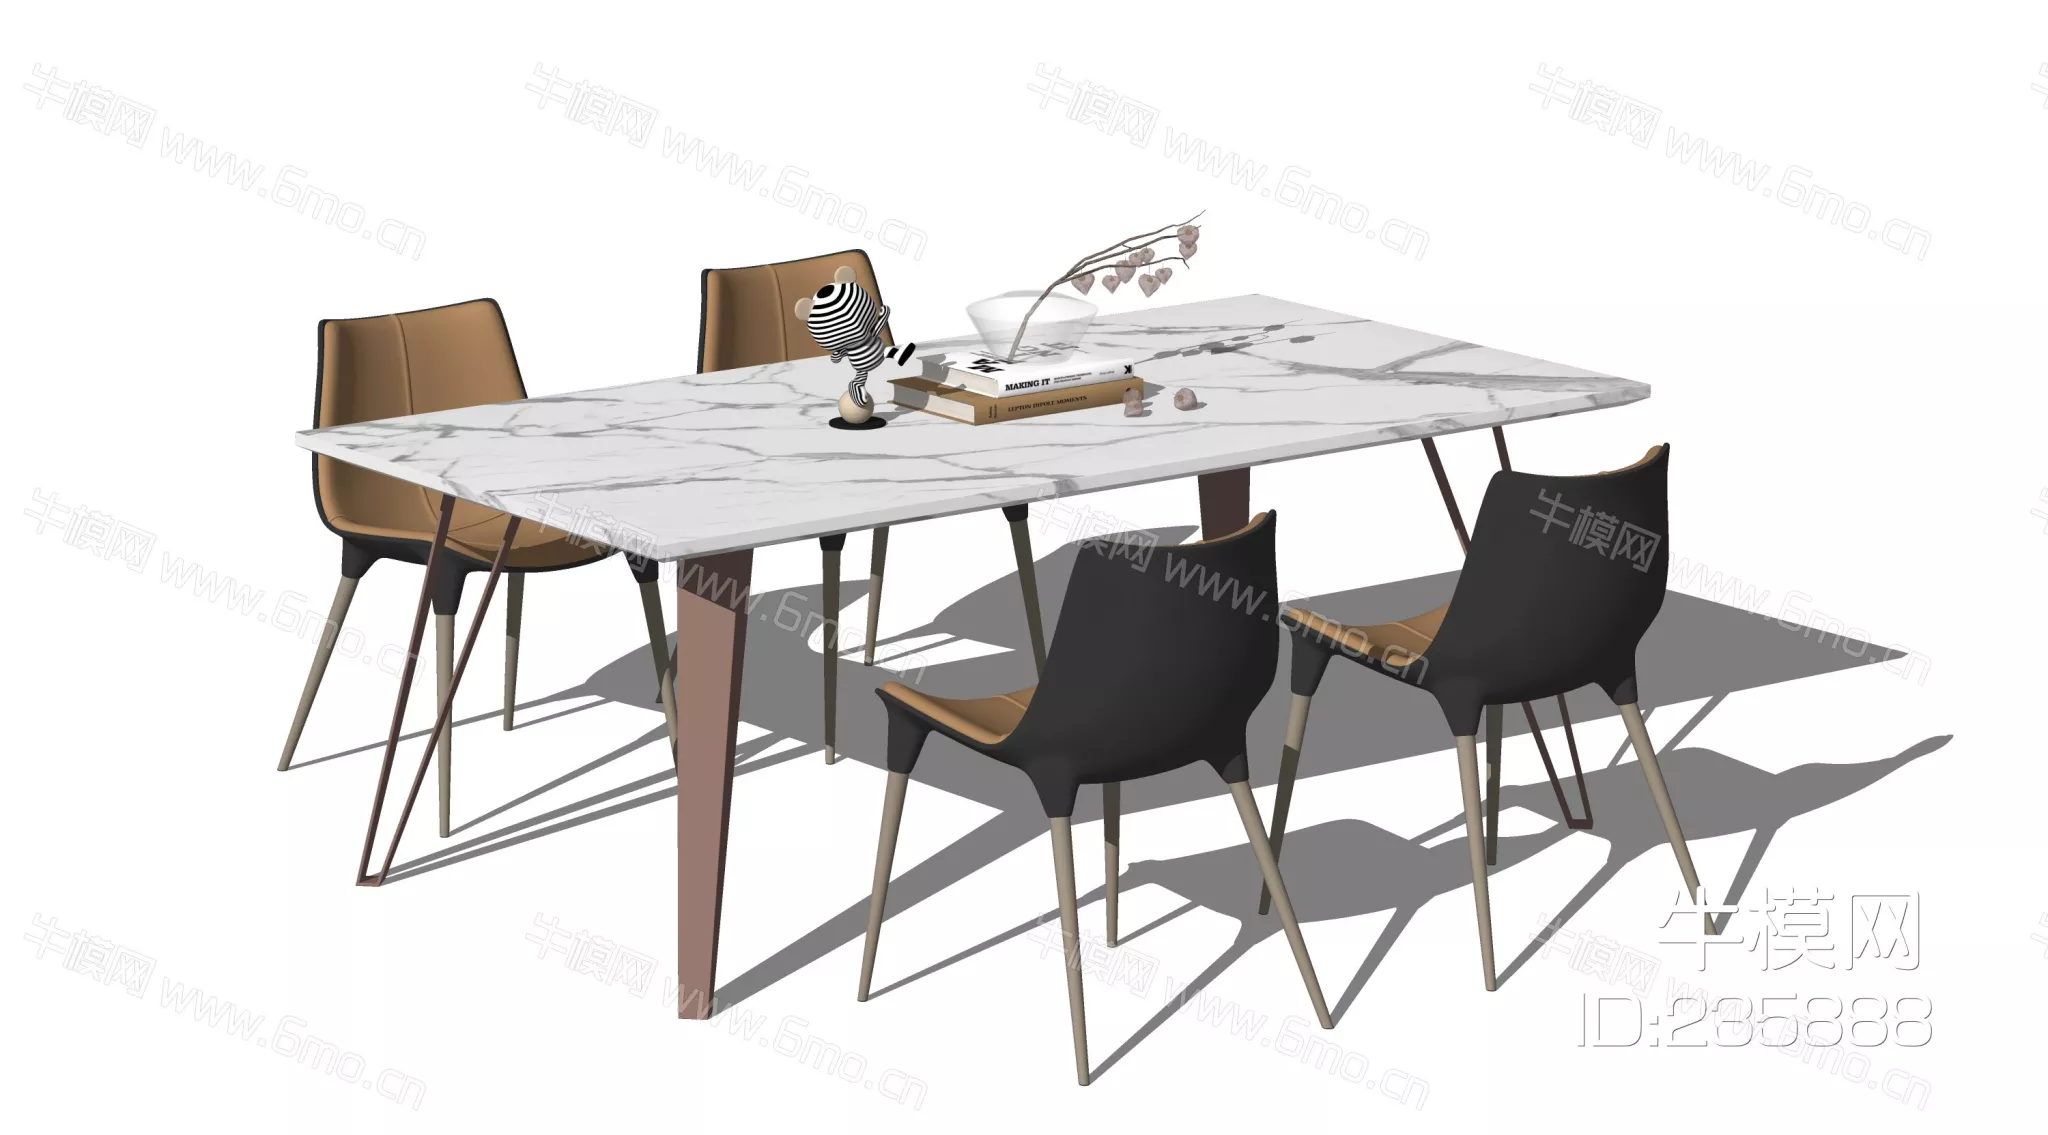 MODERN DINING TABLE SET - SKETCHUP 3D MODEL - ENSCAPE - 235888